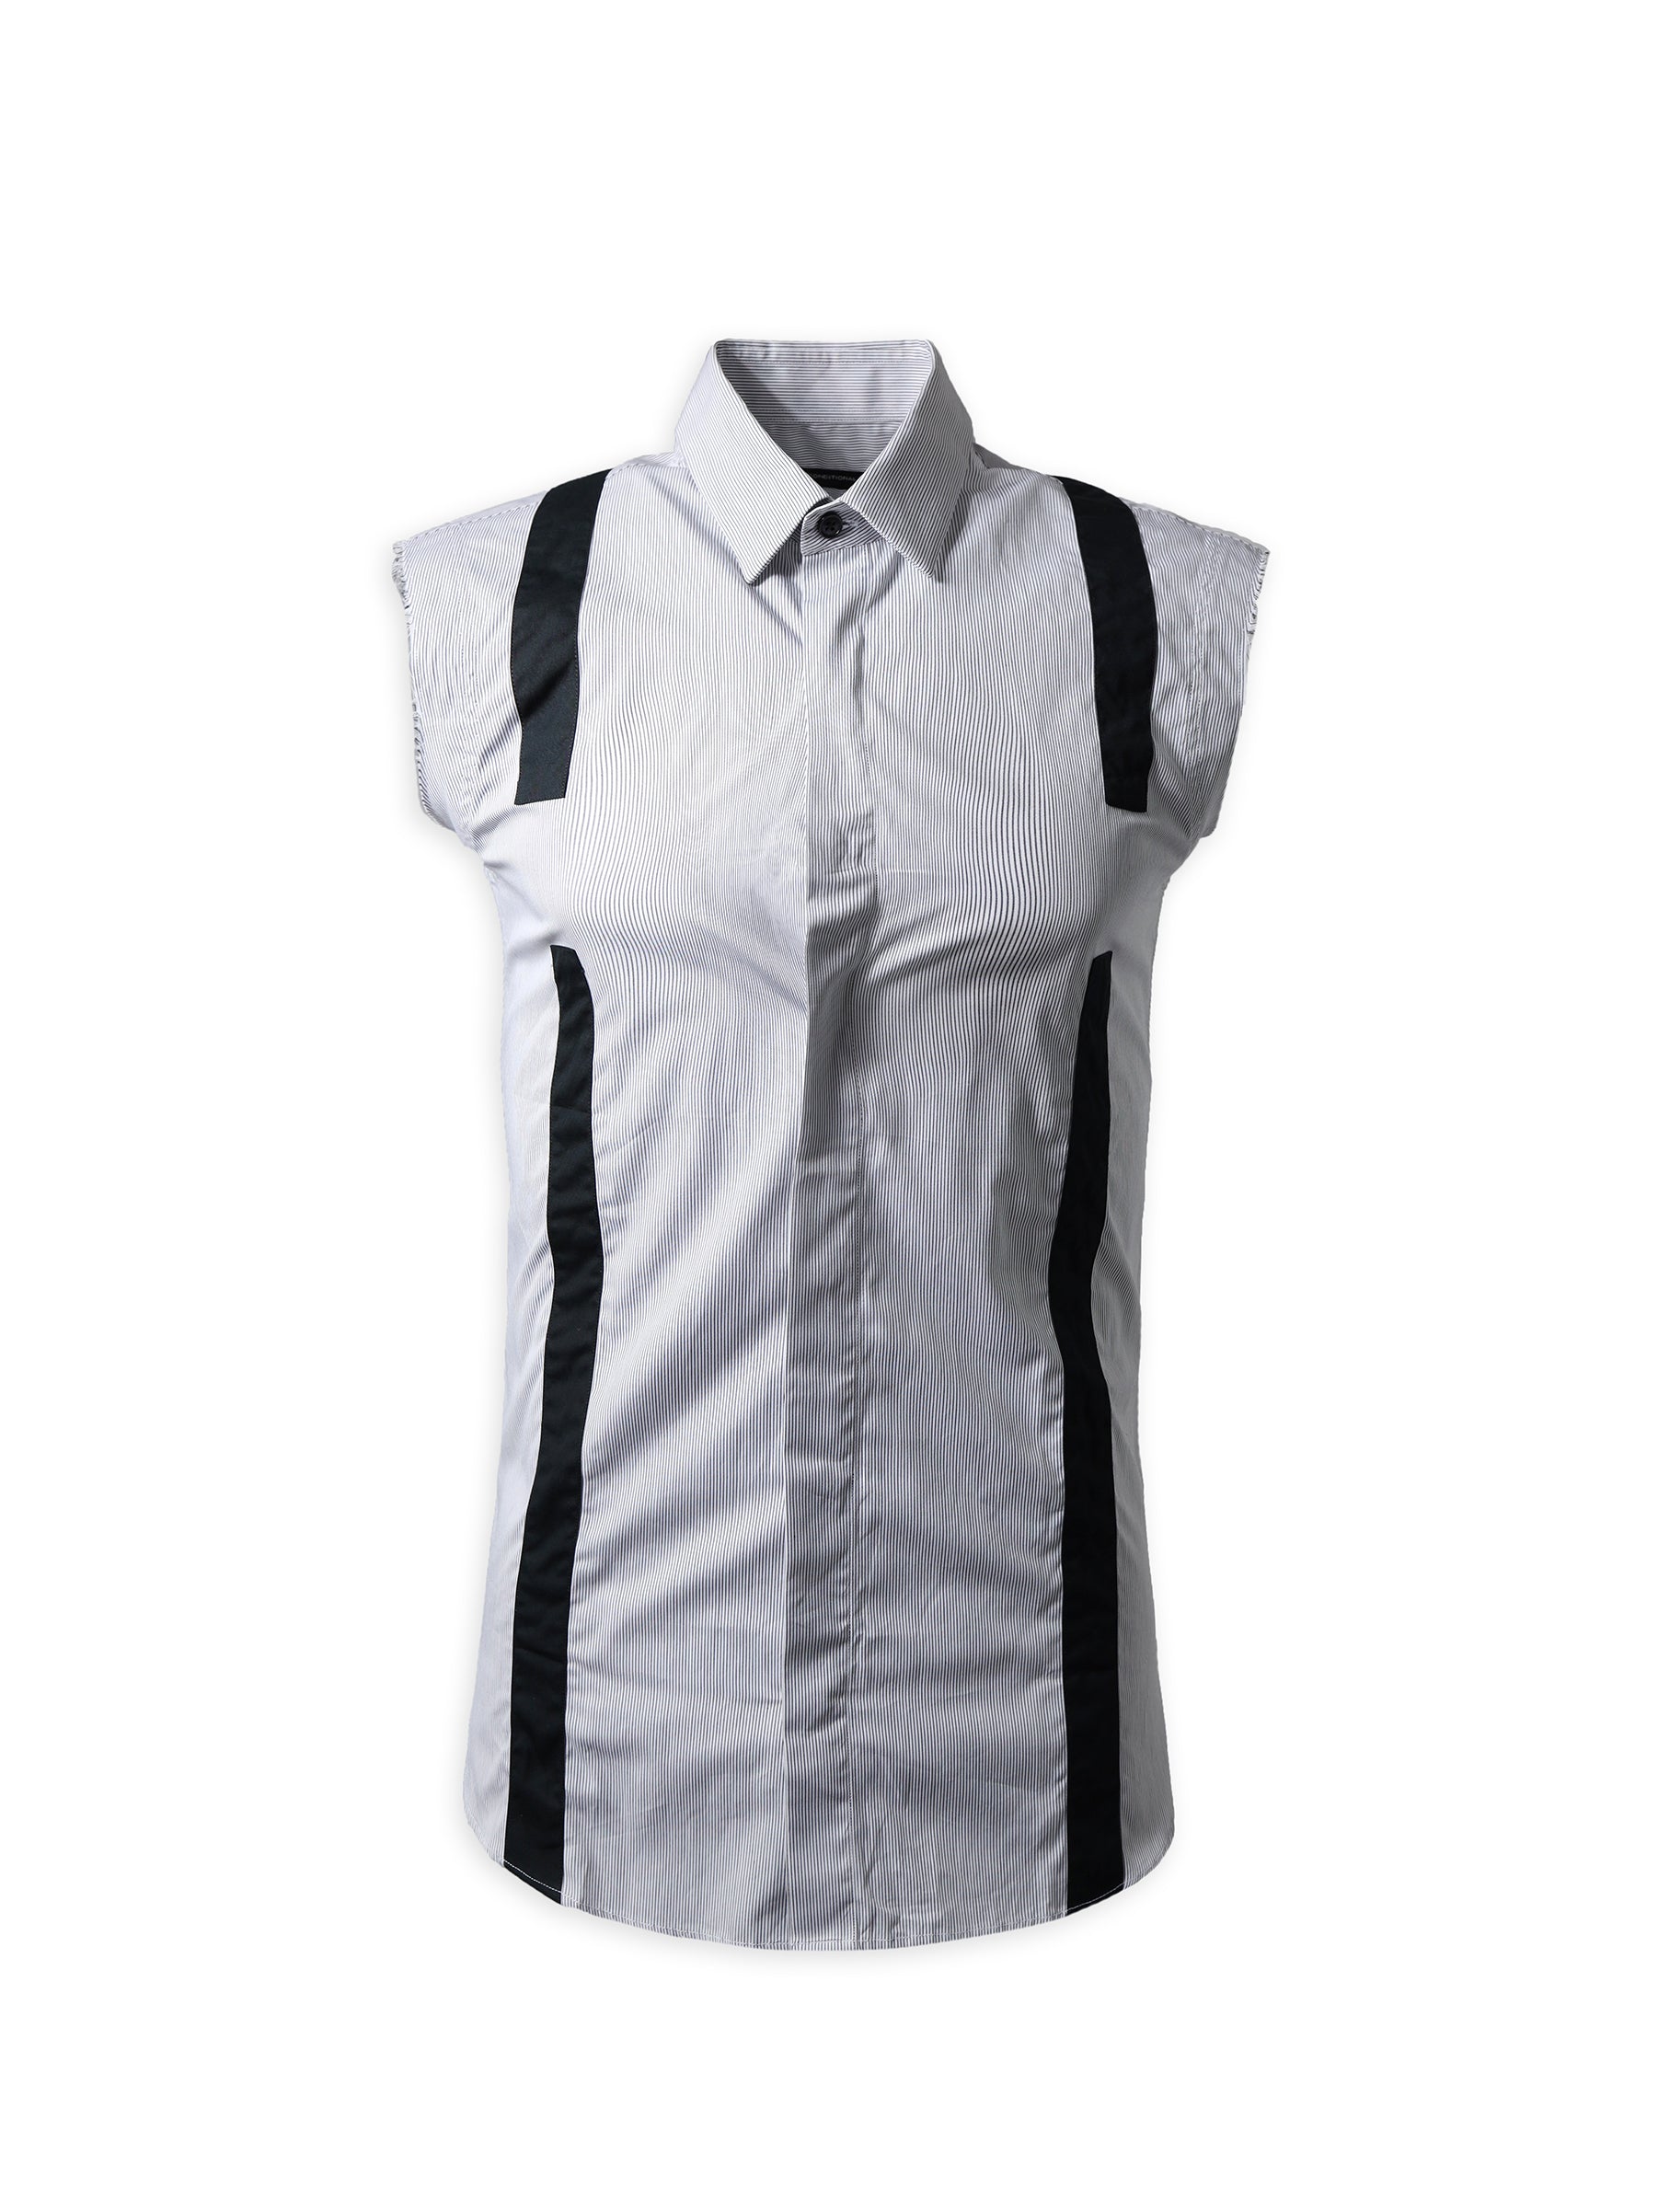 Black And White Sleeveless Shirt